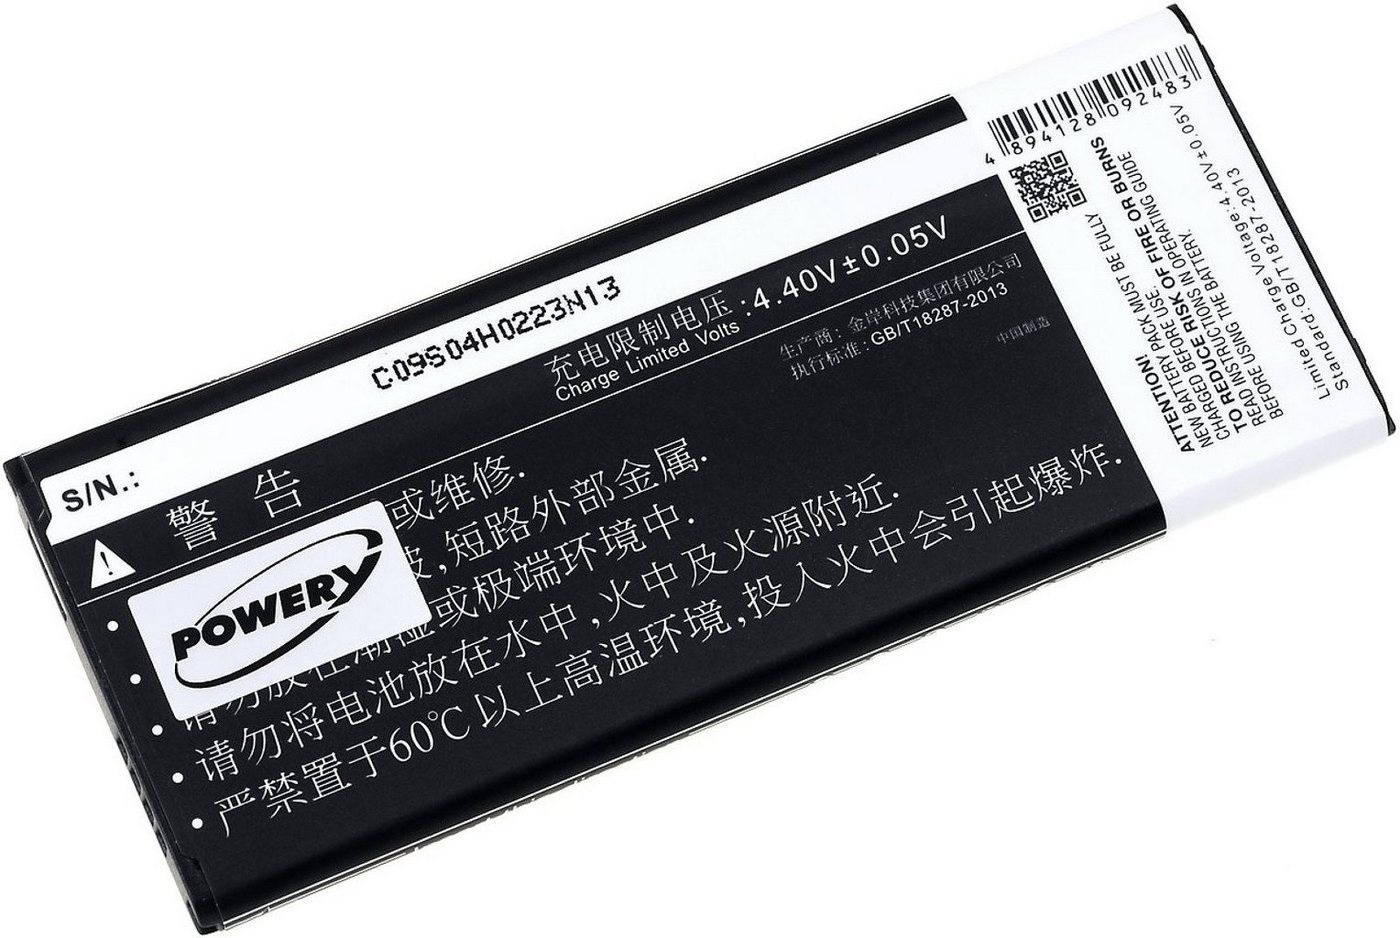 Powery Akku für Samsung Galaxy Note 4 (chinesisches Modell) mit NFC-Chip Smartphone-Akku 3000 mAh (3.85 V) schwarz